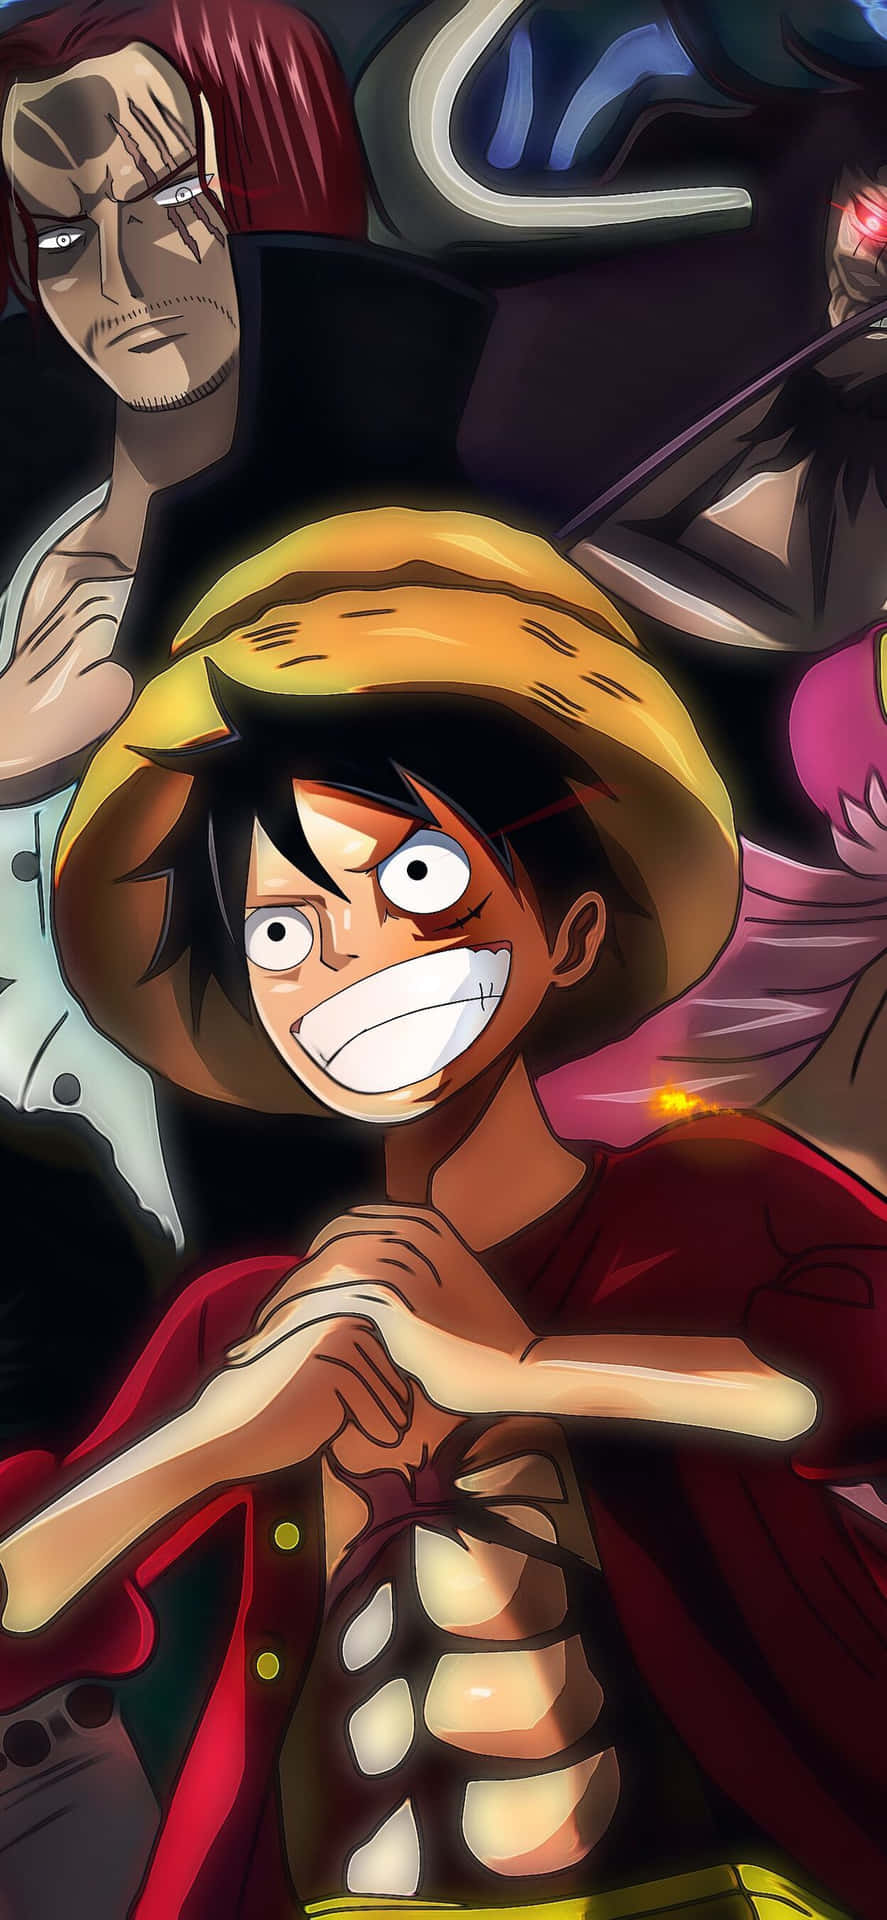 Luffy leder Straw Hat Pirates i universet af One Piece 🎉 Wallpaper